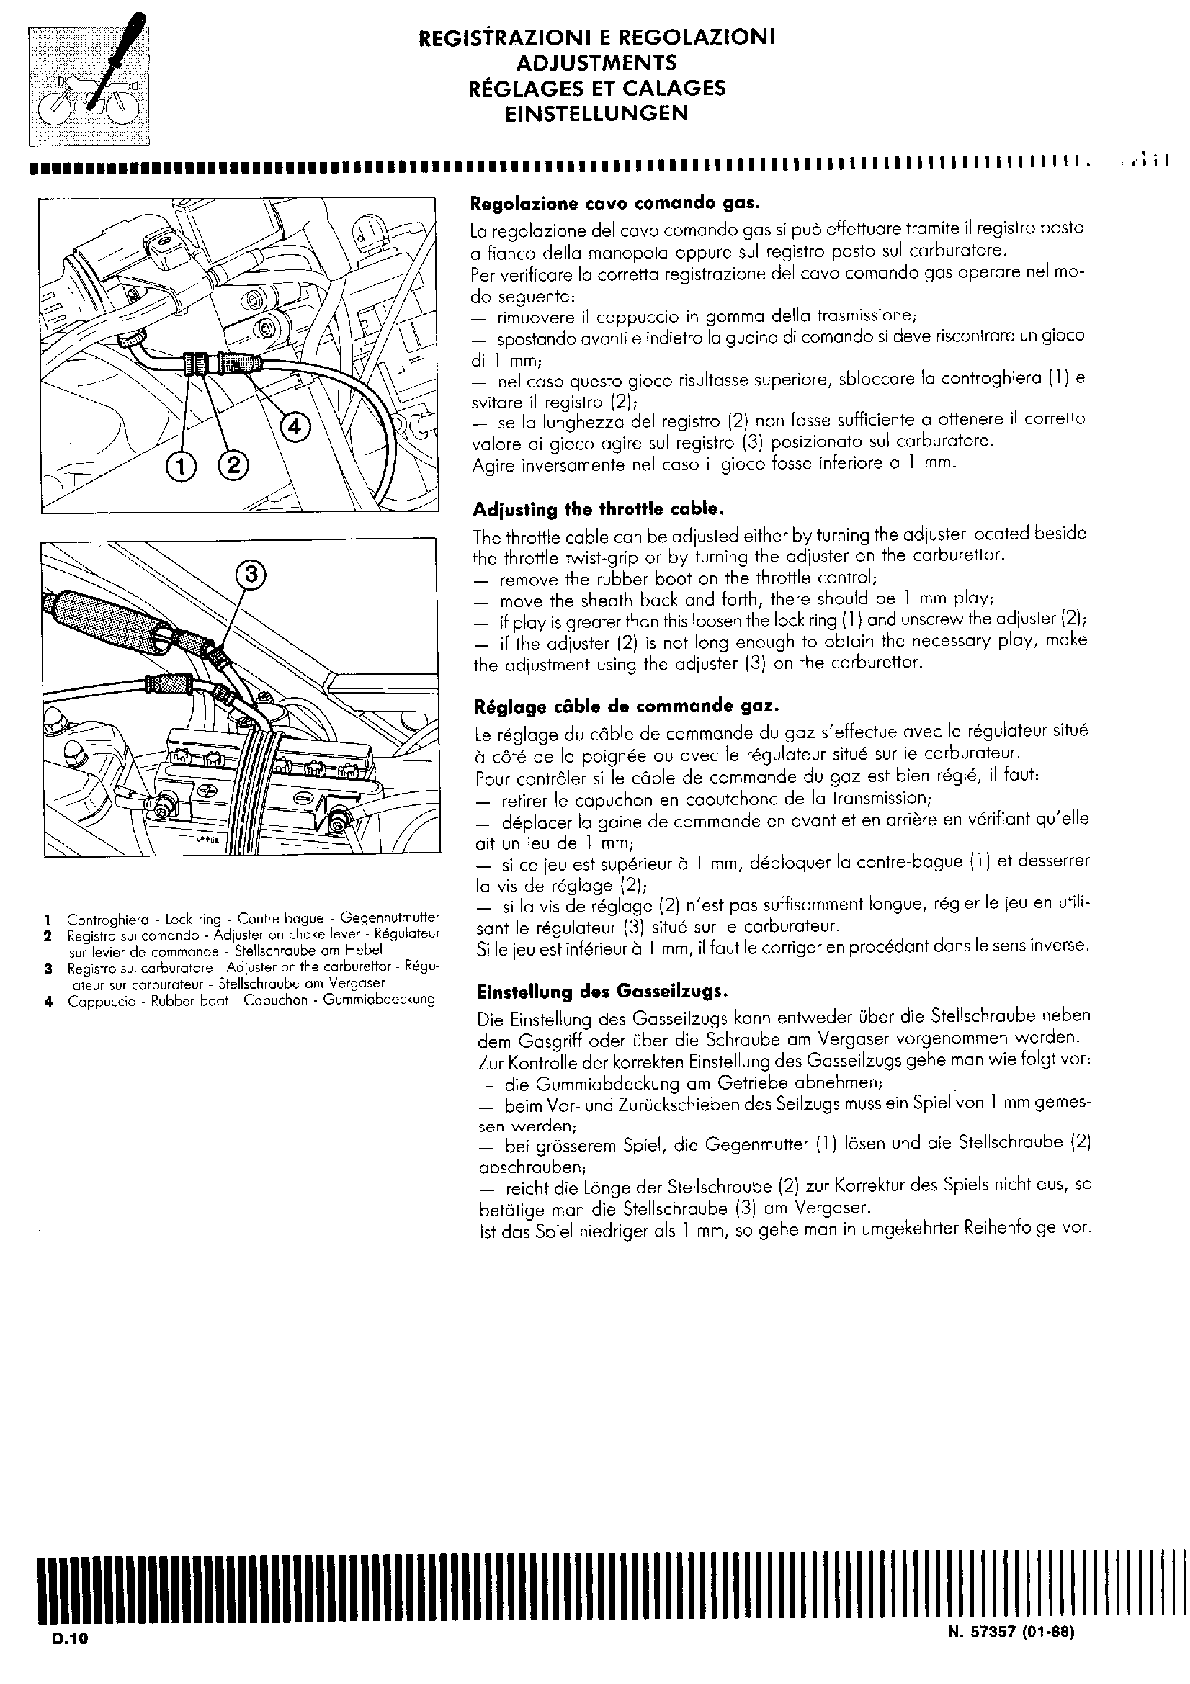 1987-1988 Cagiva Freccia C10R 125 Manual de servicio